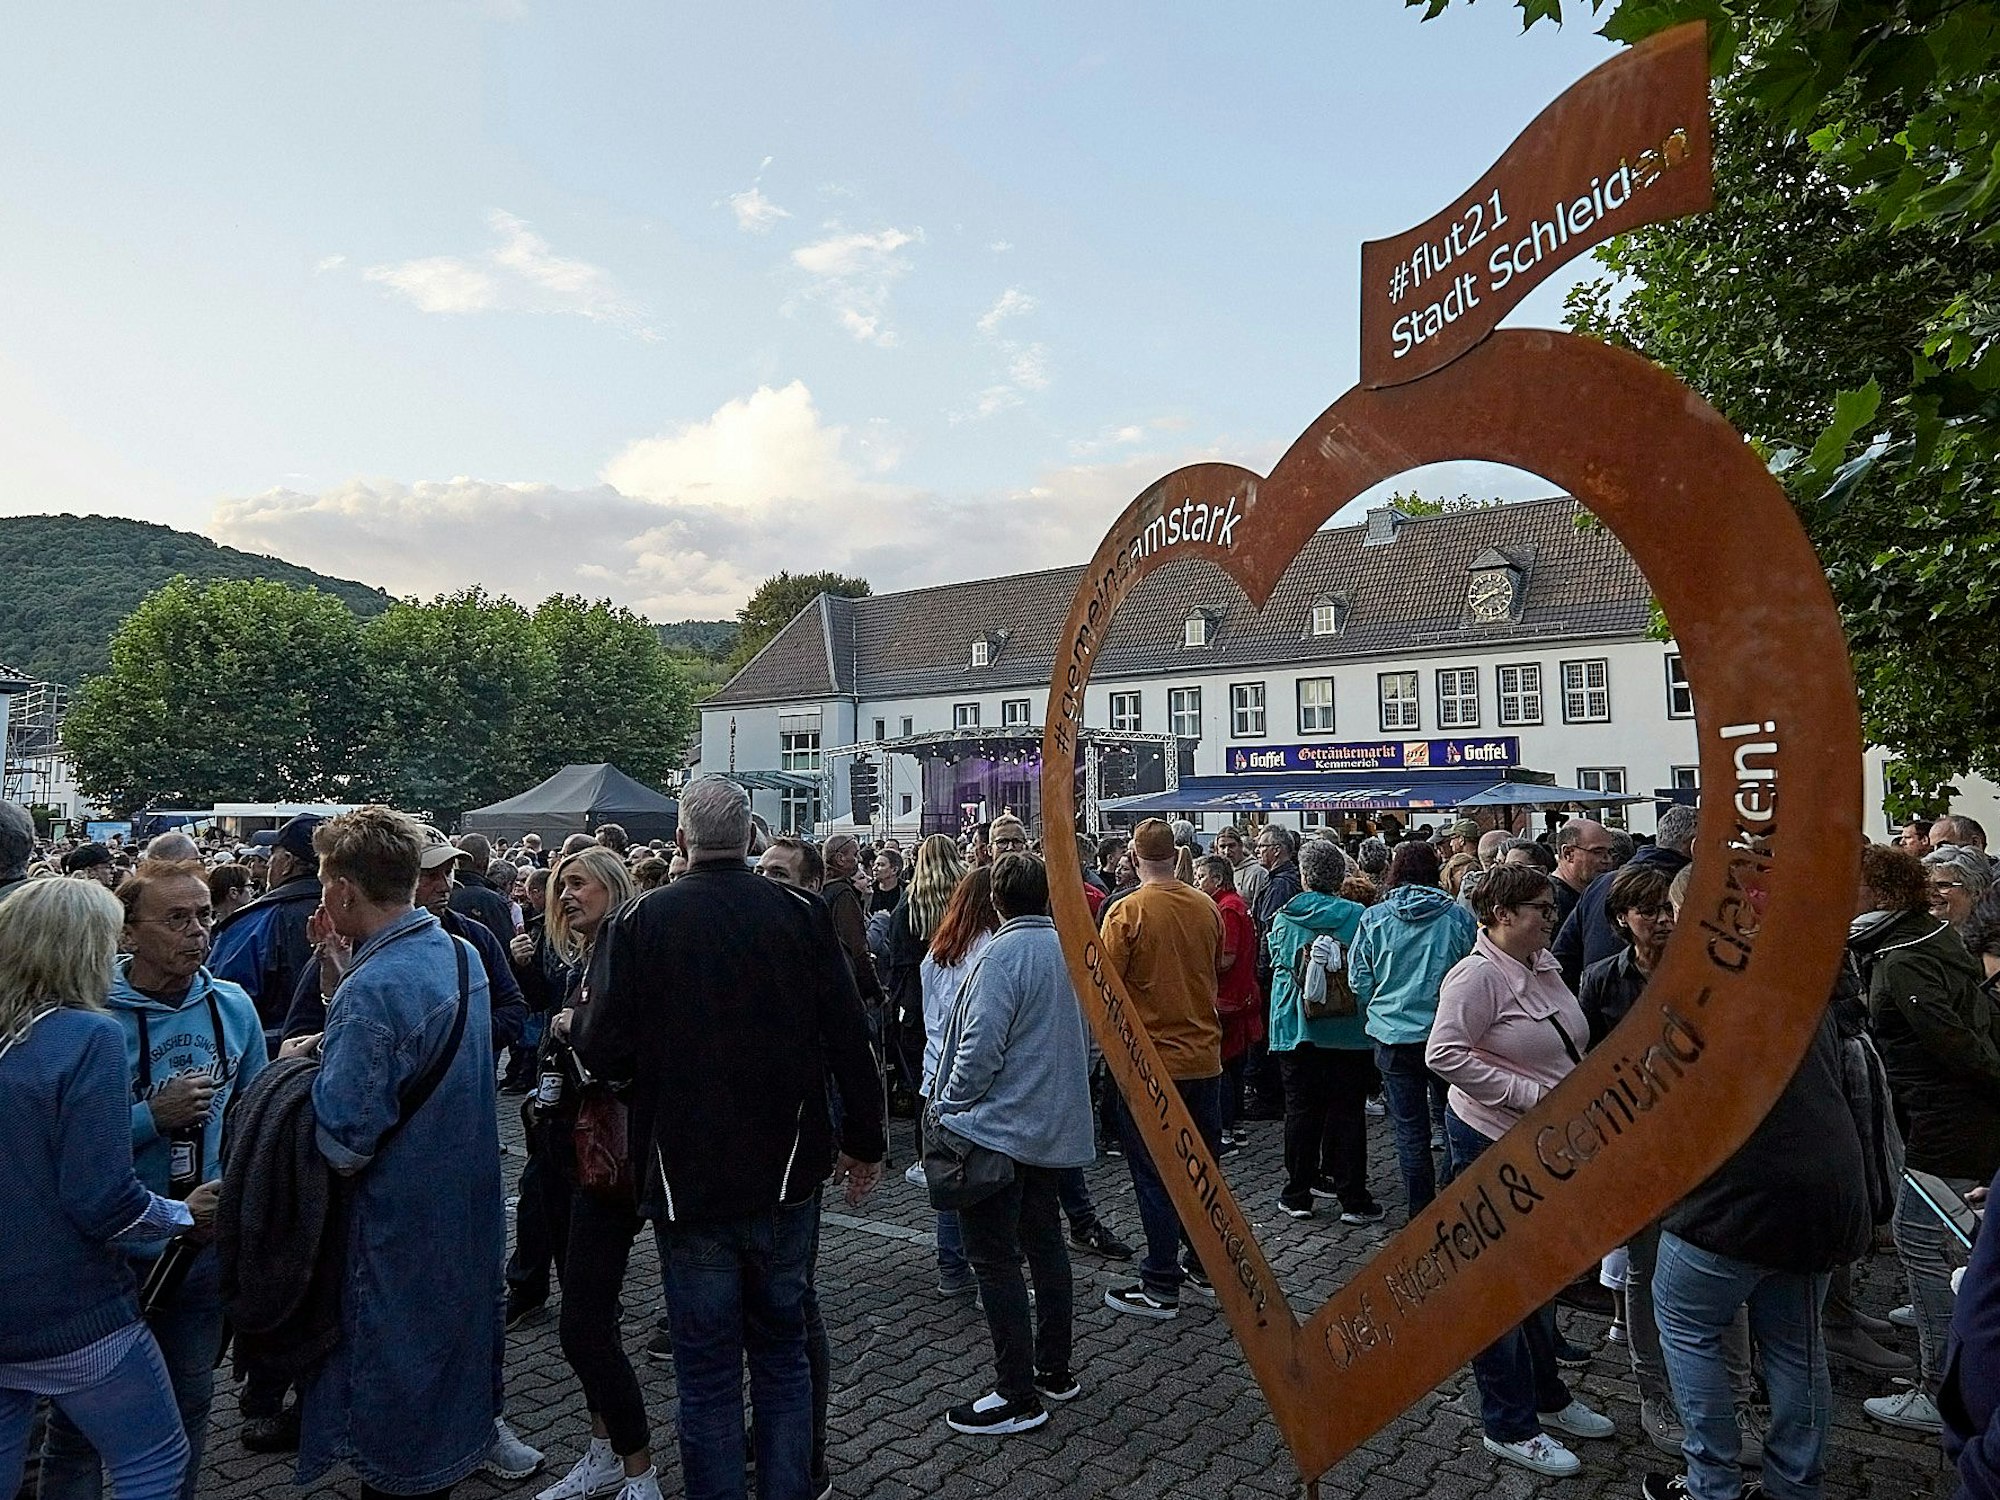 Das Bild zeigt ein Herz aus rostigem Blech, auf dem ein Dank an die Flut-Helfer steht. Im Hintergrund sind zahlreiche Menschen auf dem Marienplatz zu sehen.